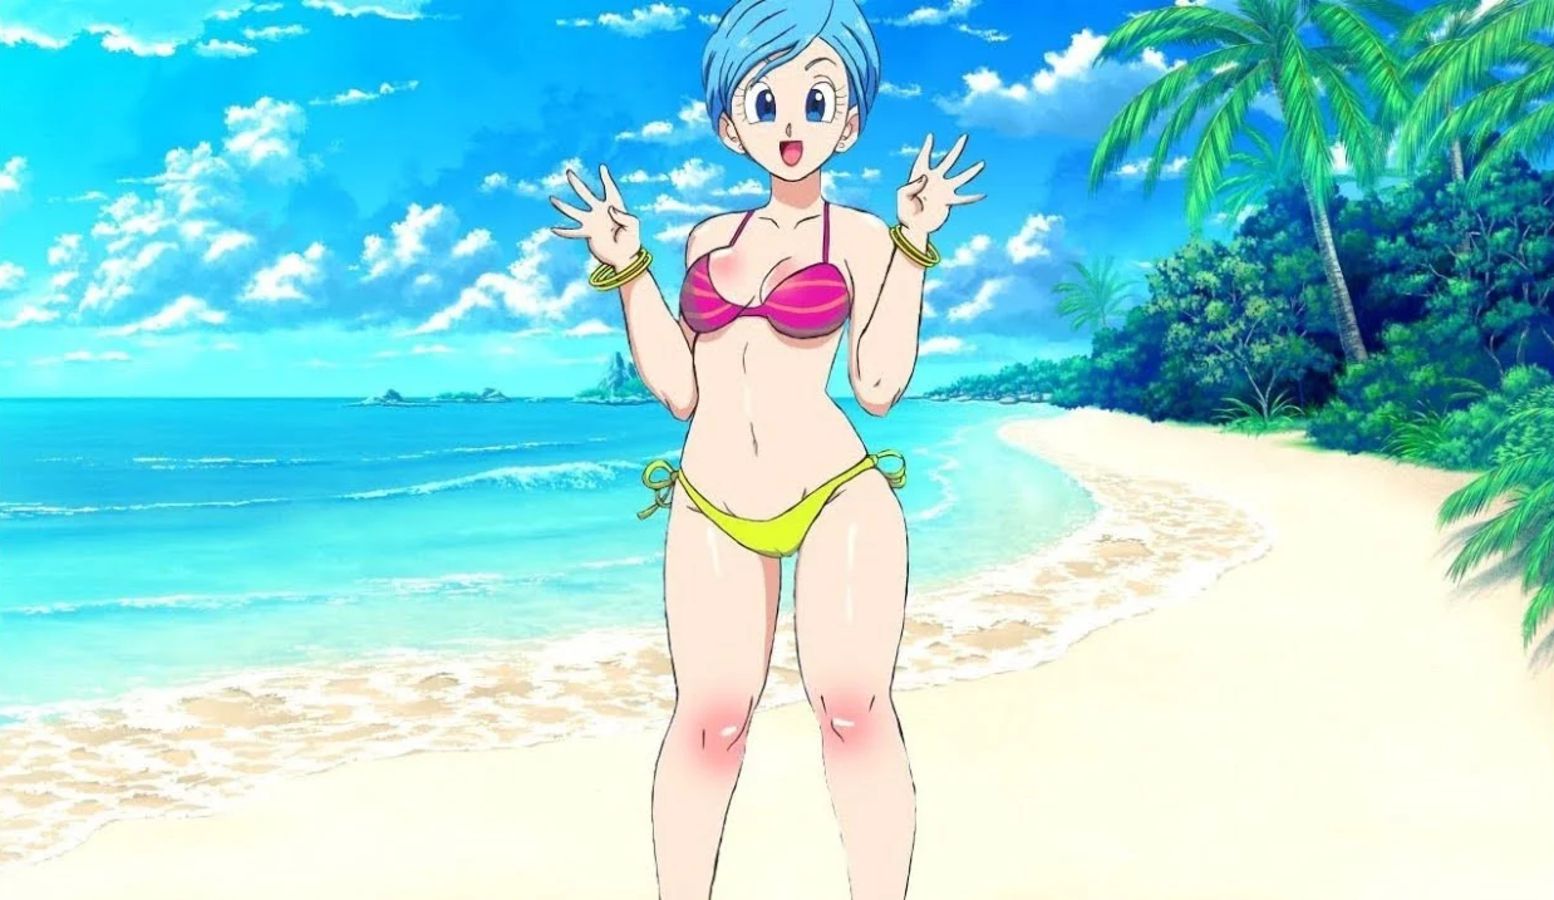 Dragon Ball: il cosplay di Bulma in costume da bagno di clefchan sa come divertirsi sulla spiaggia